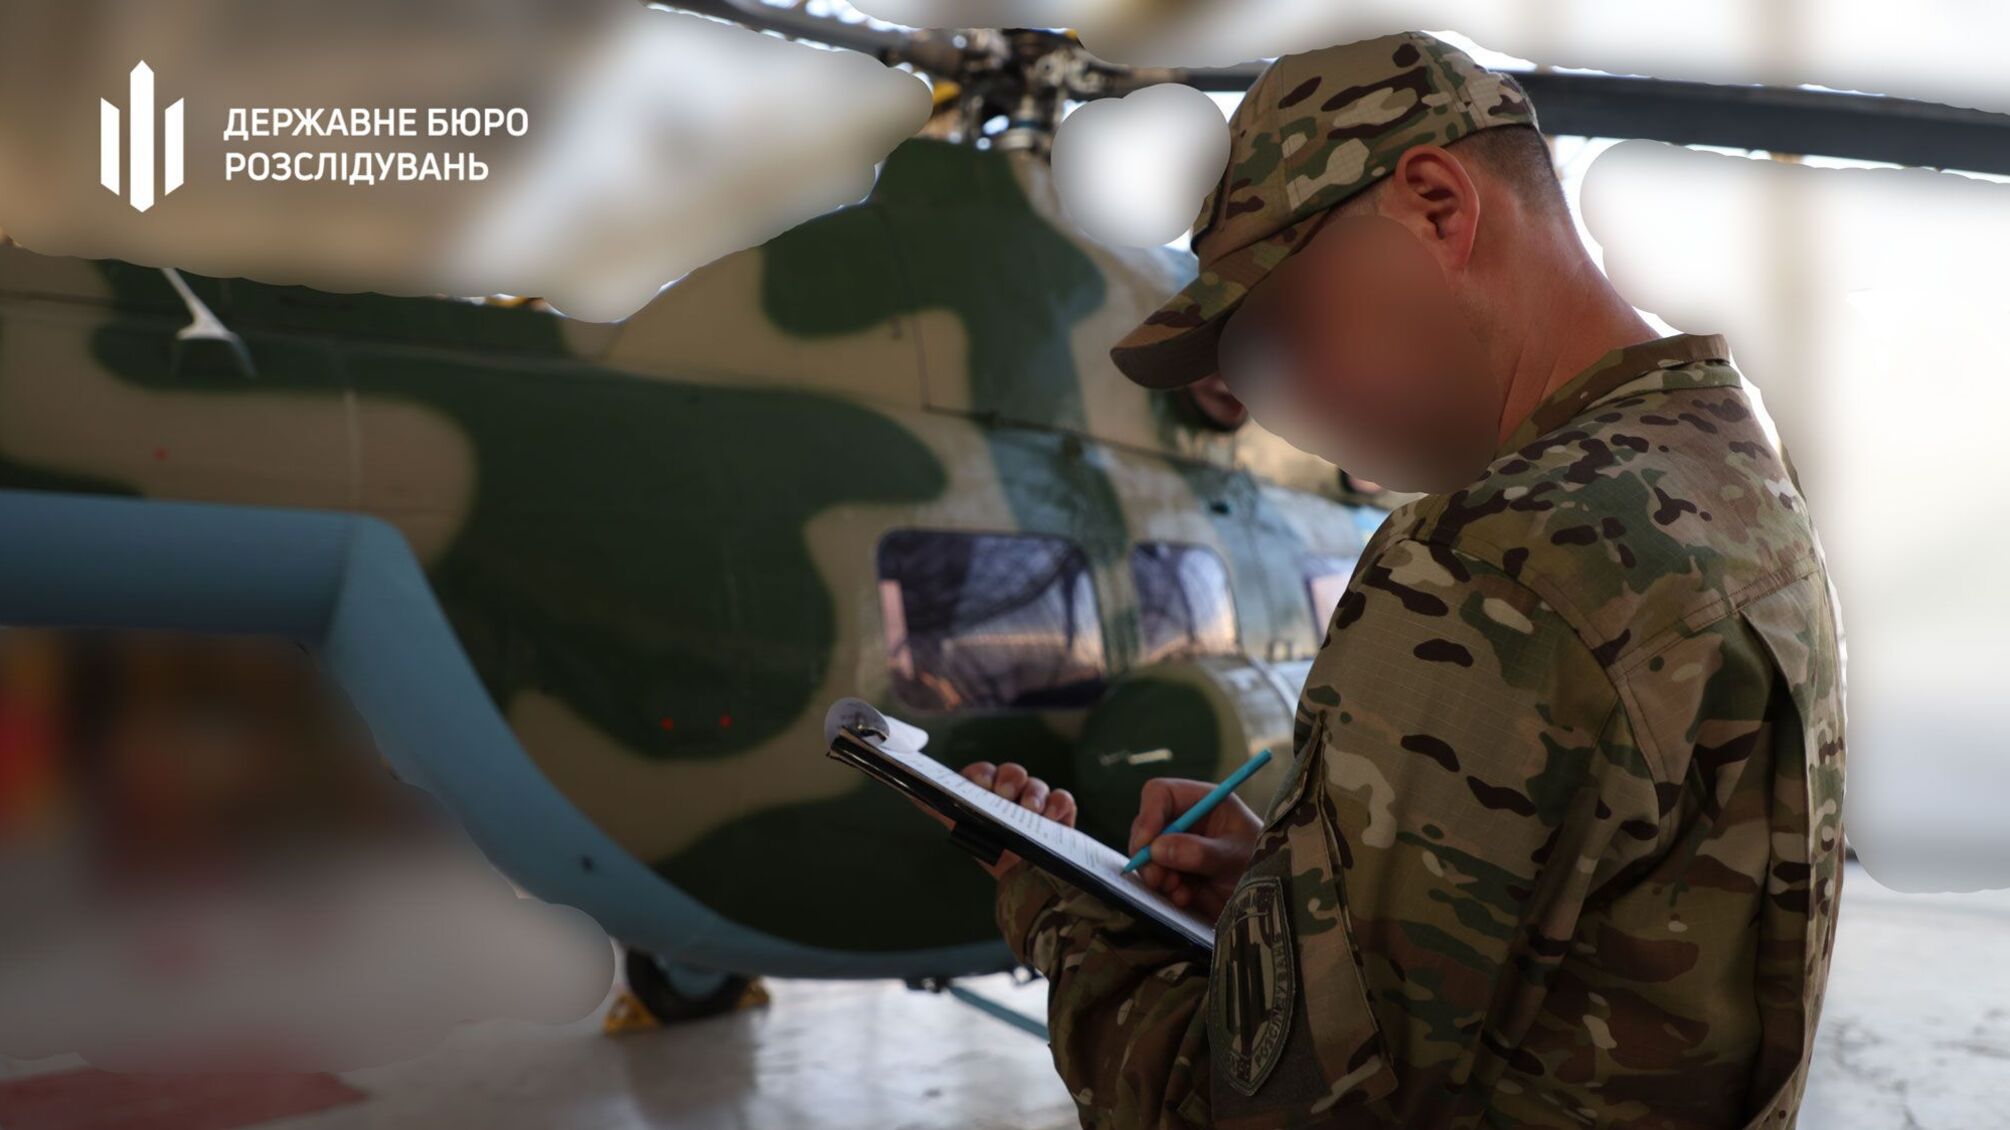 Гелікоптер Мі-2, який екскерівництво 'Мотор Січ' ховало від ЗСУ, передали військовим, – ДБР